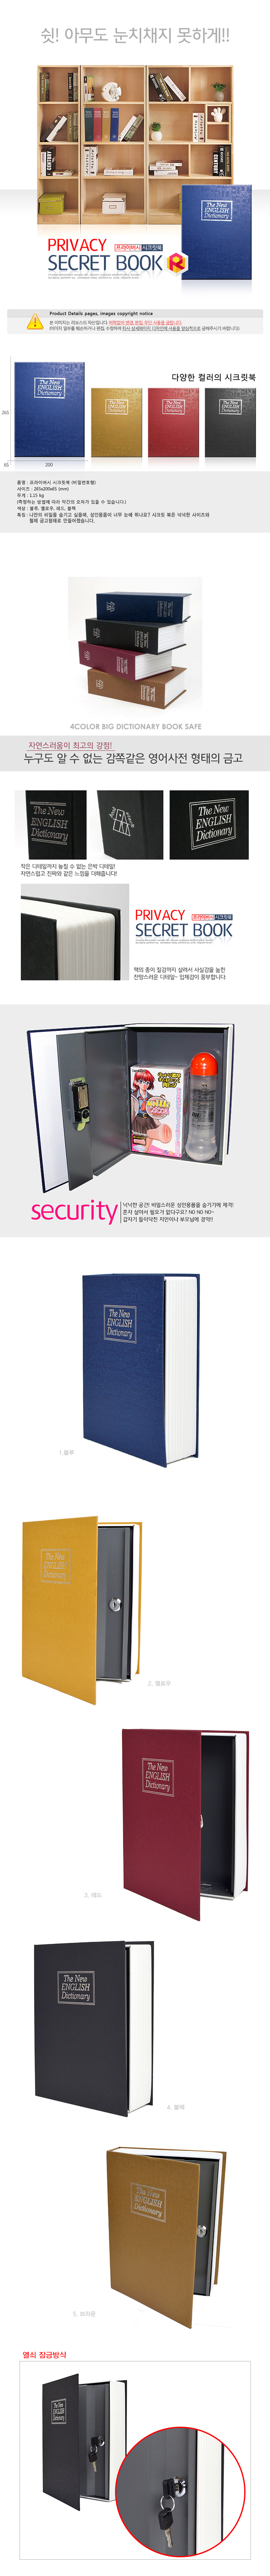 [안심잠금] 시크릿 북 SECURIT BOOK (비밀상자)